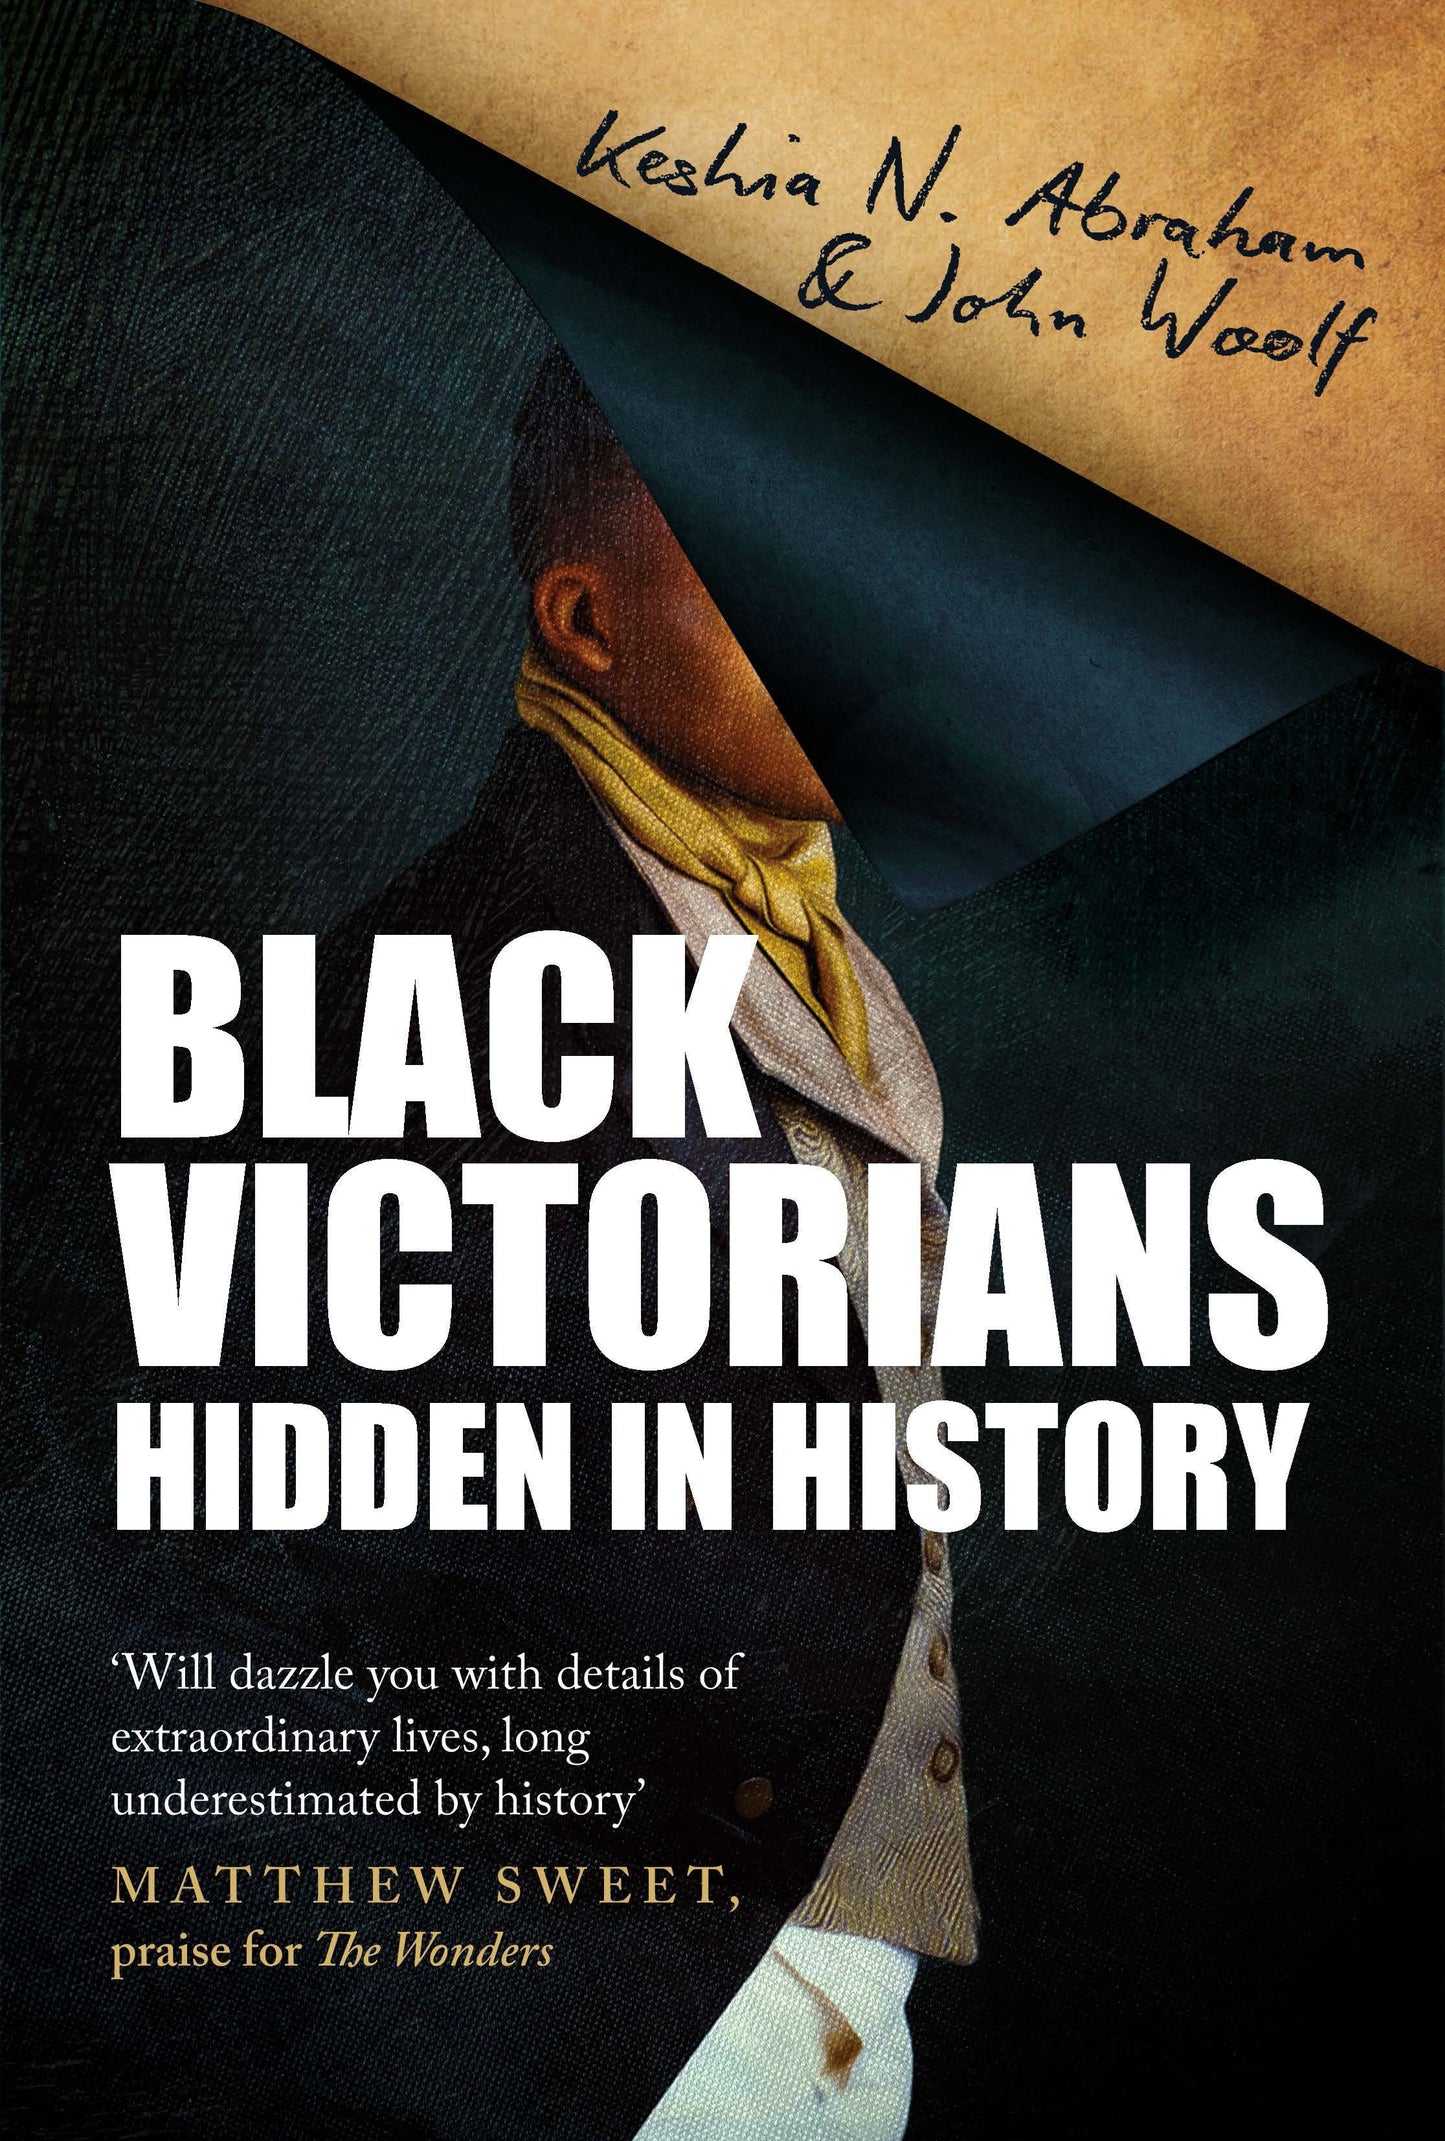 Black Victorians Hidden in History